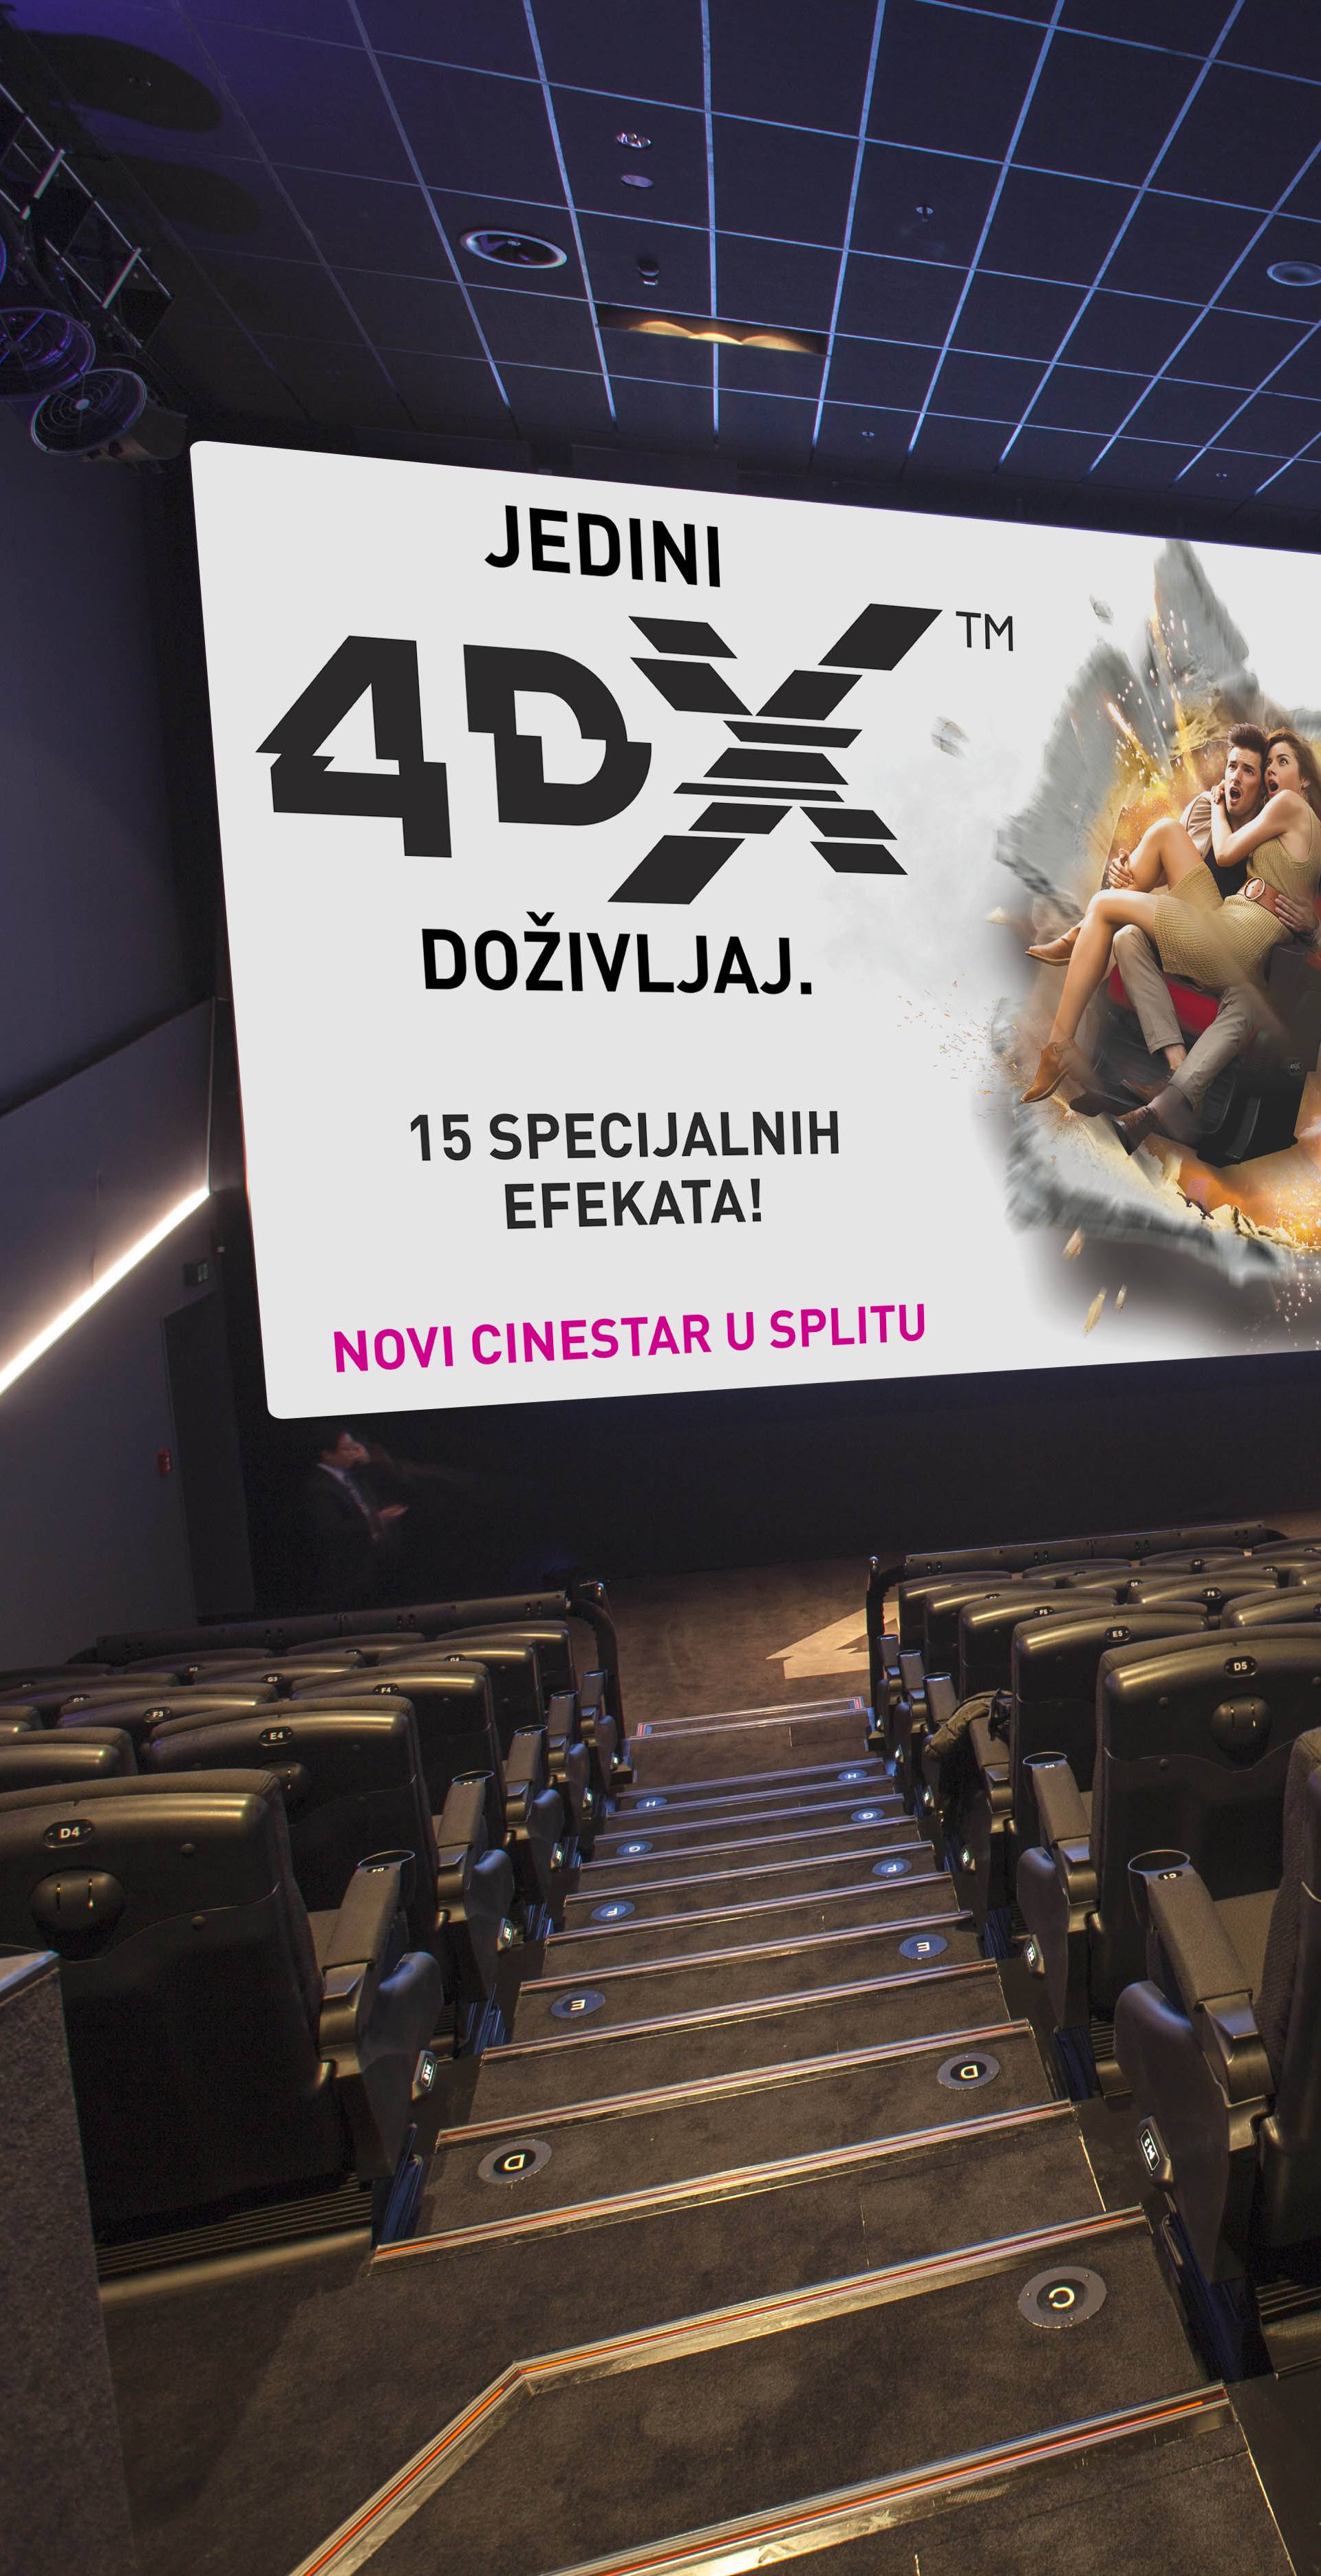 CineStar otvara najveće i najmodernije kino u Dalmaciji